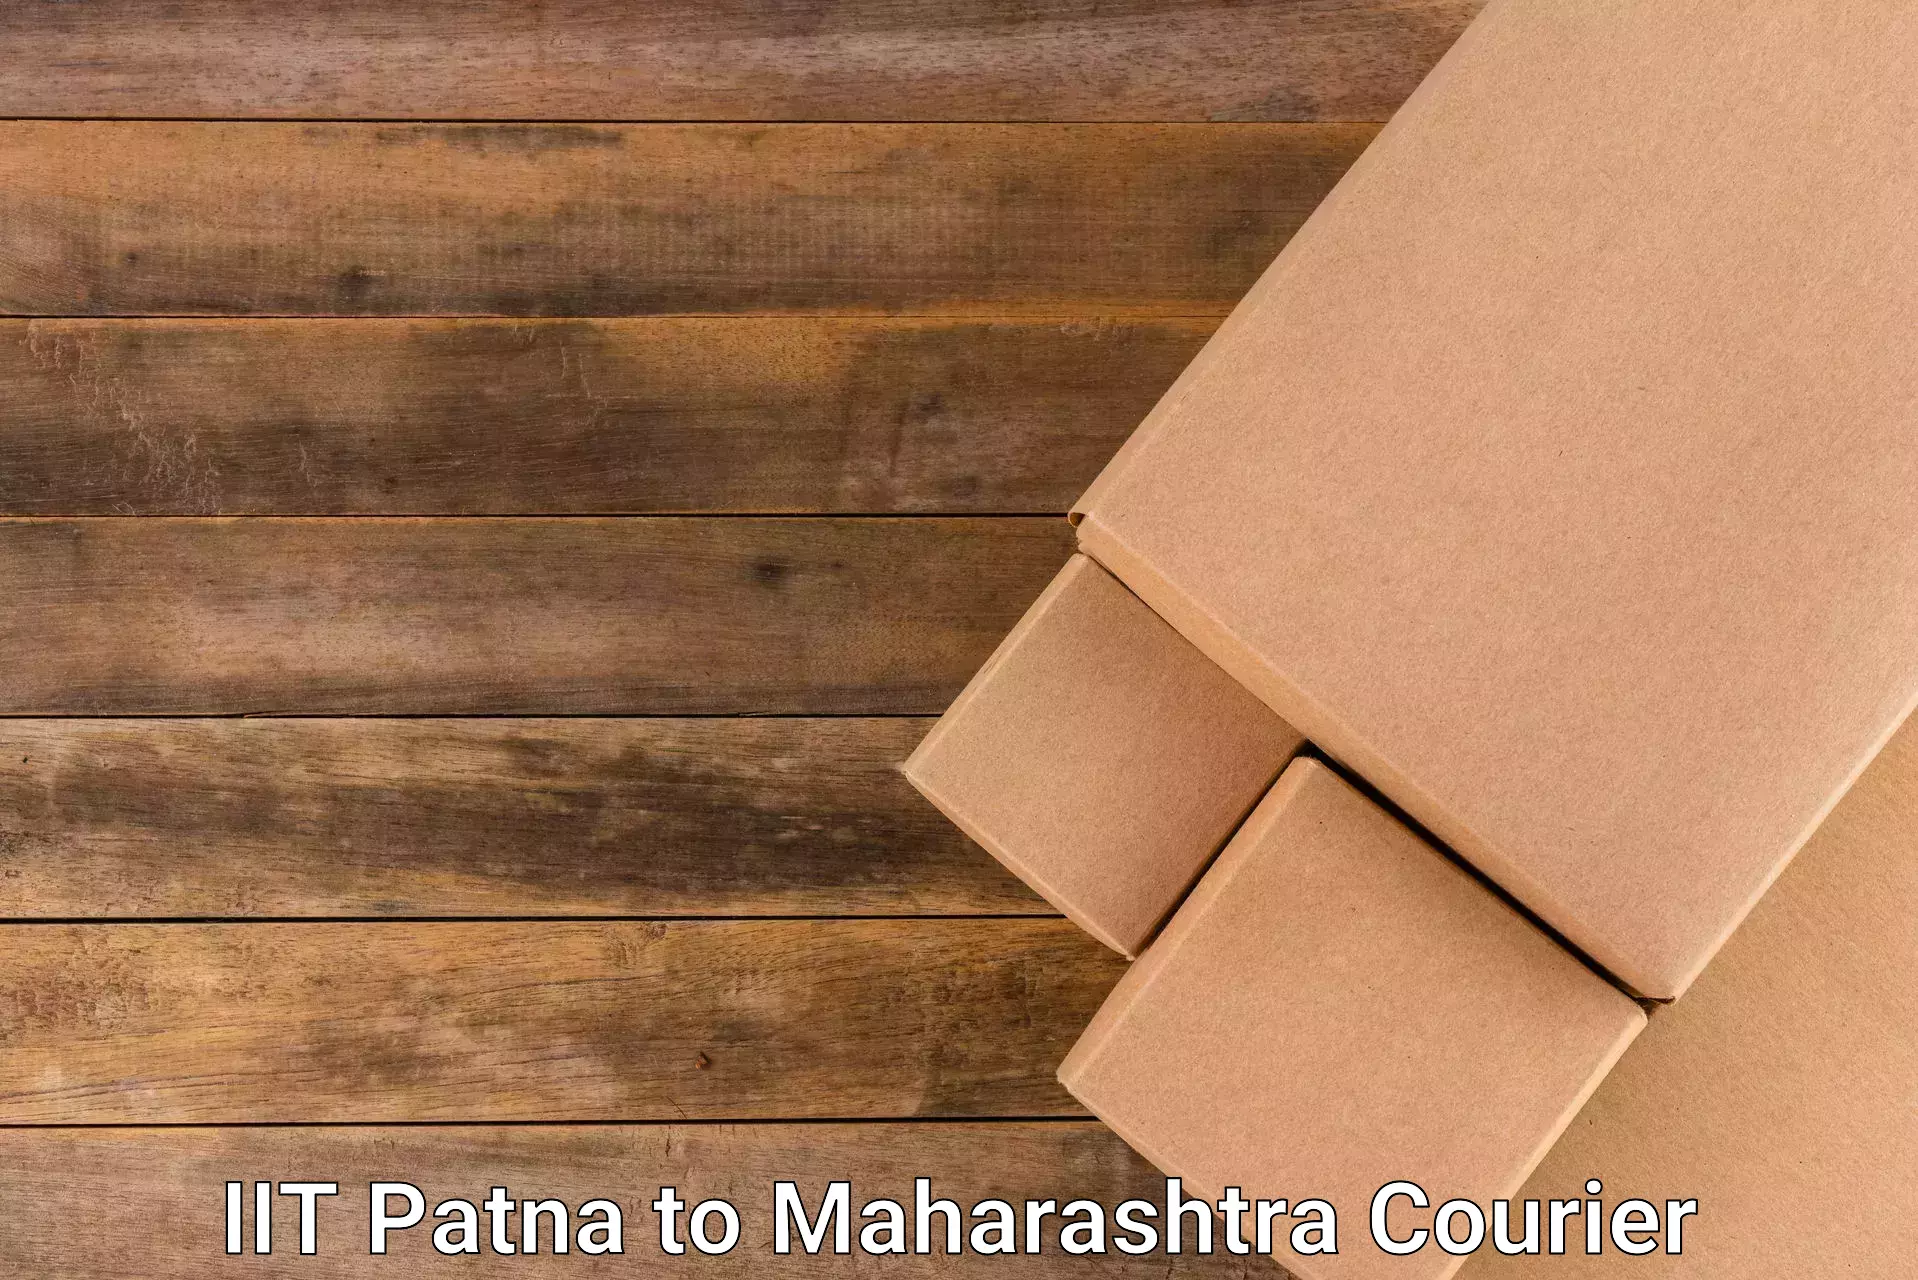 Express courier facilities IIT Patna to Vasai